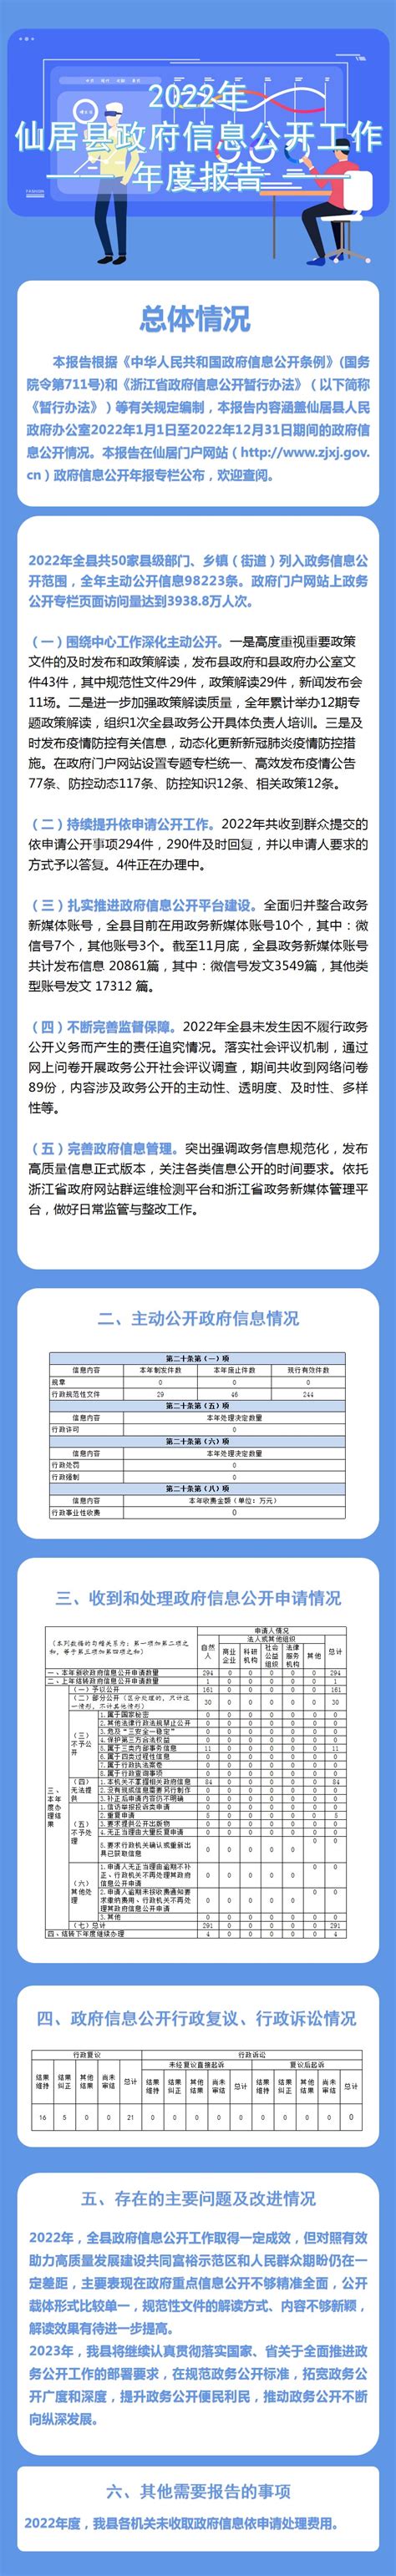 2022年仙居县政府信息公开年报（图解）